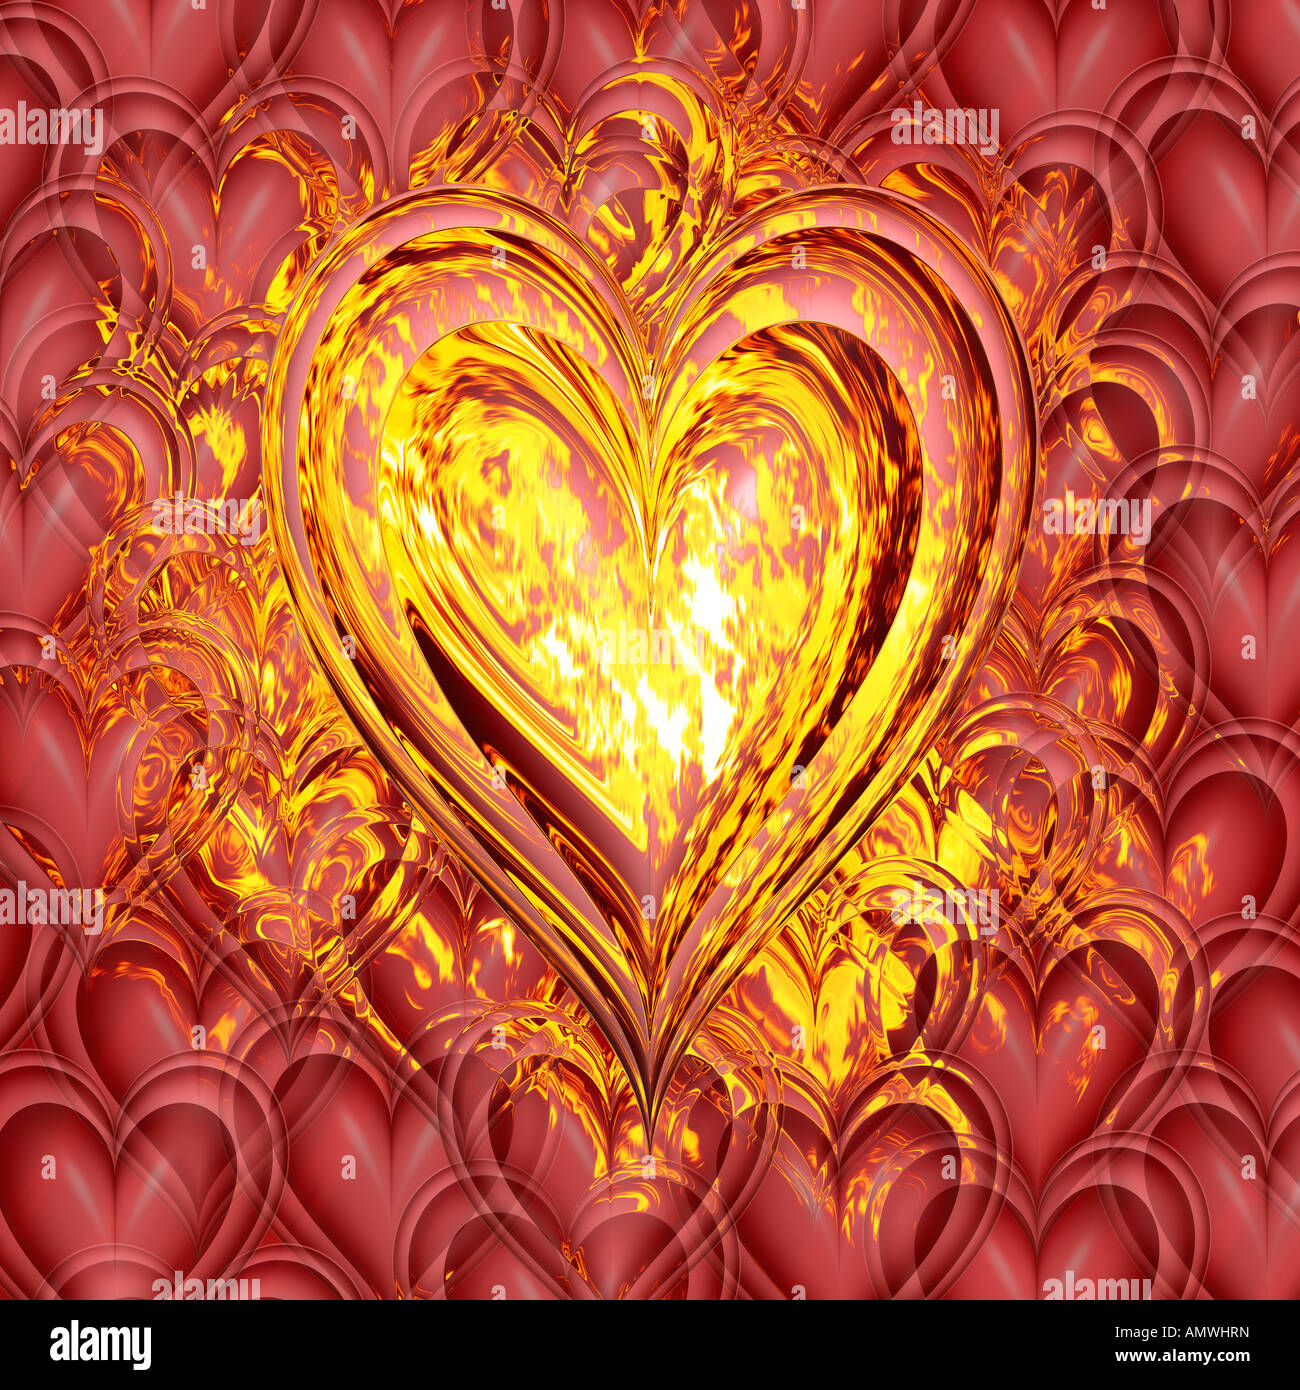 Coeur en feu pour symboliser la passion et l'amour brûlant Banque D'Images